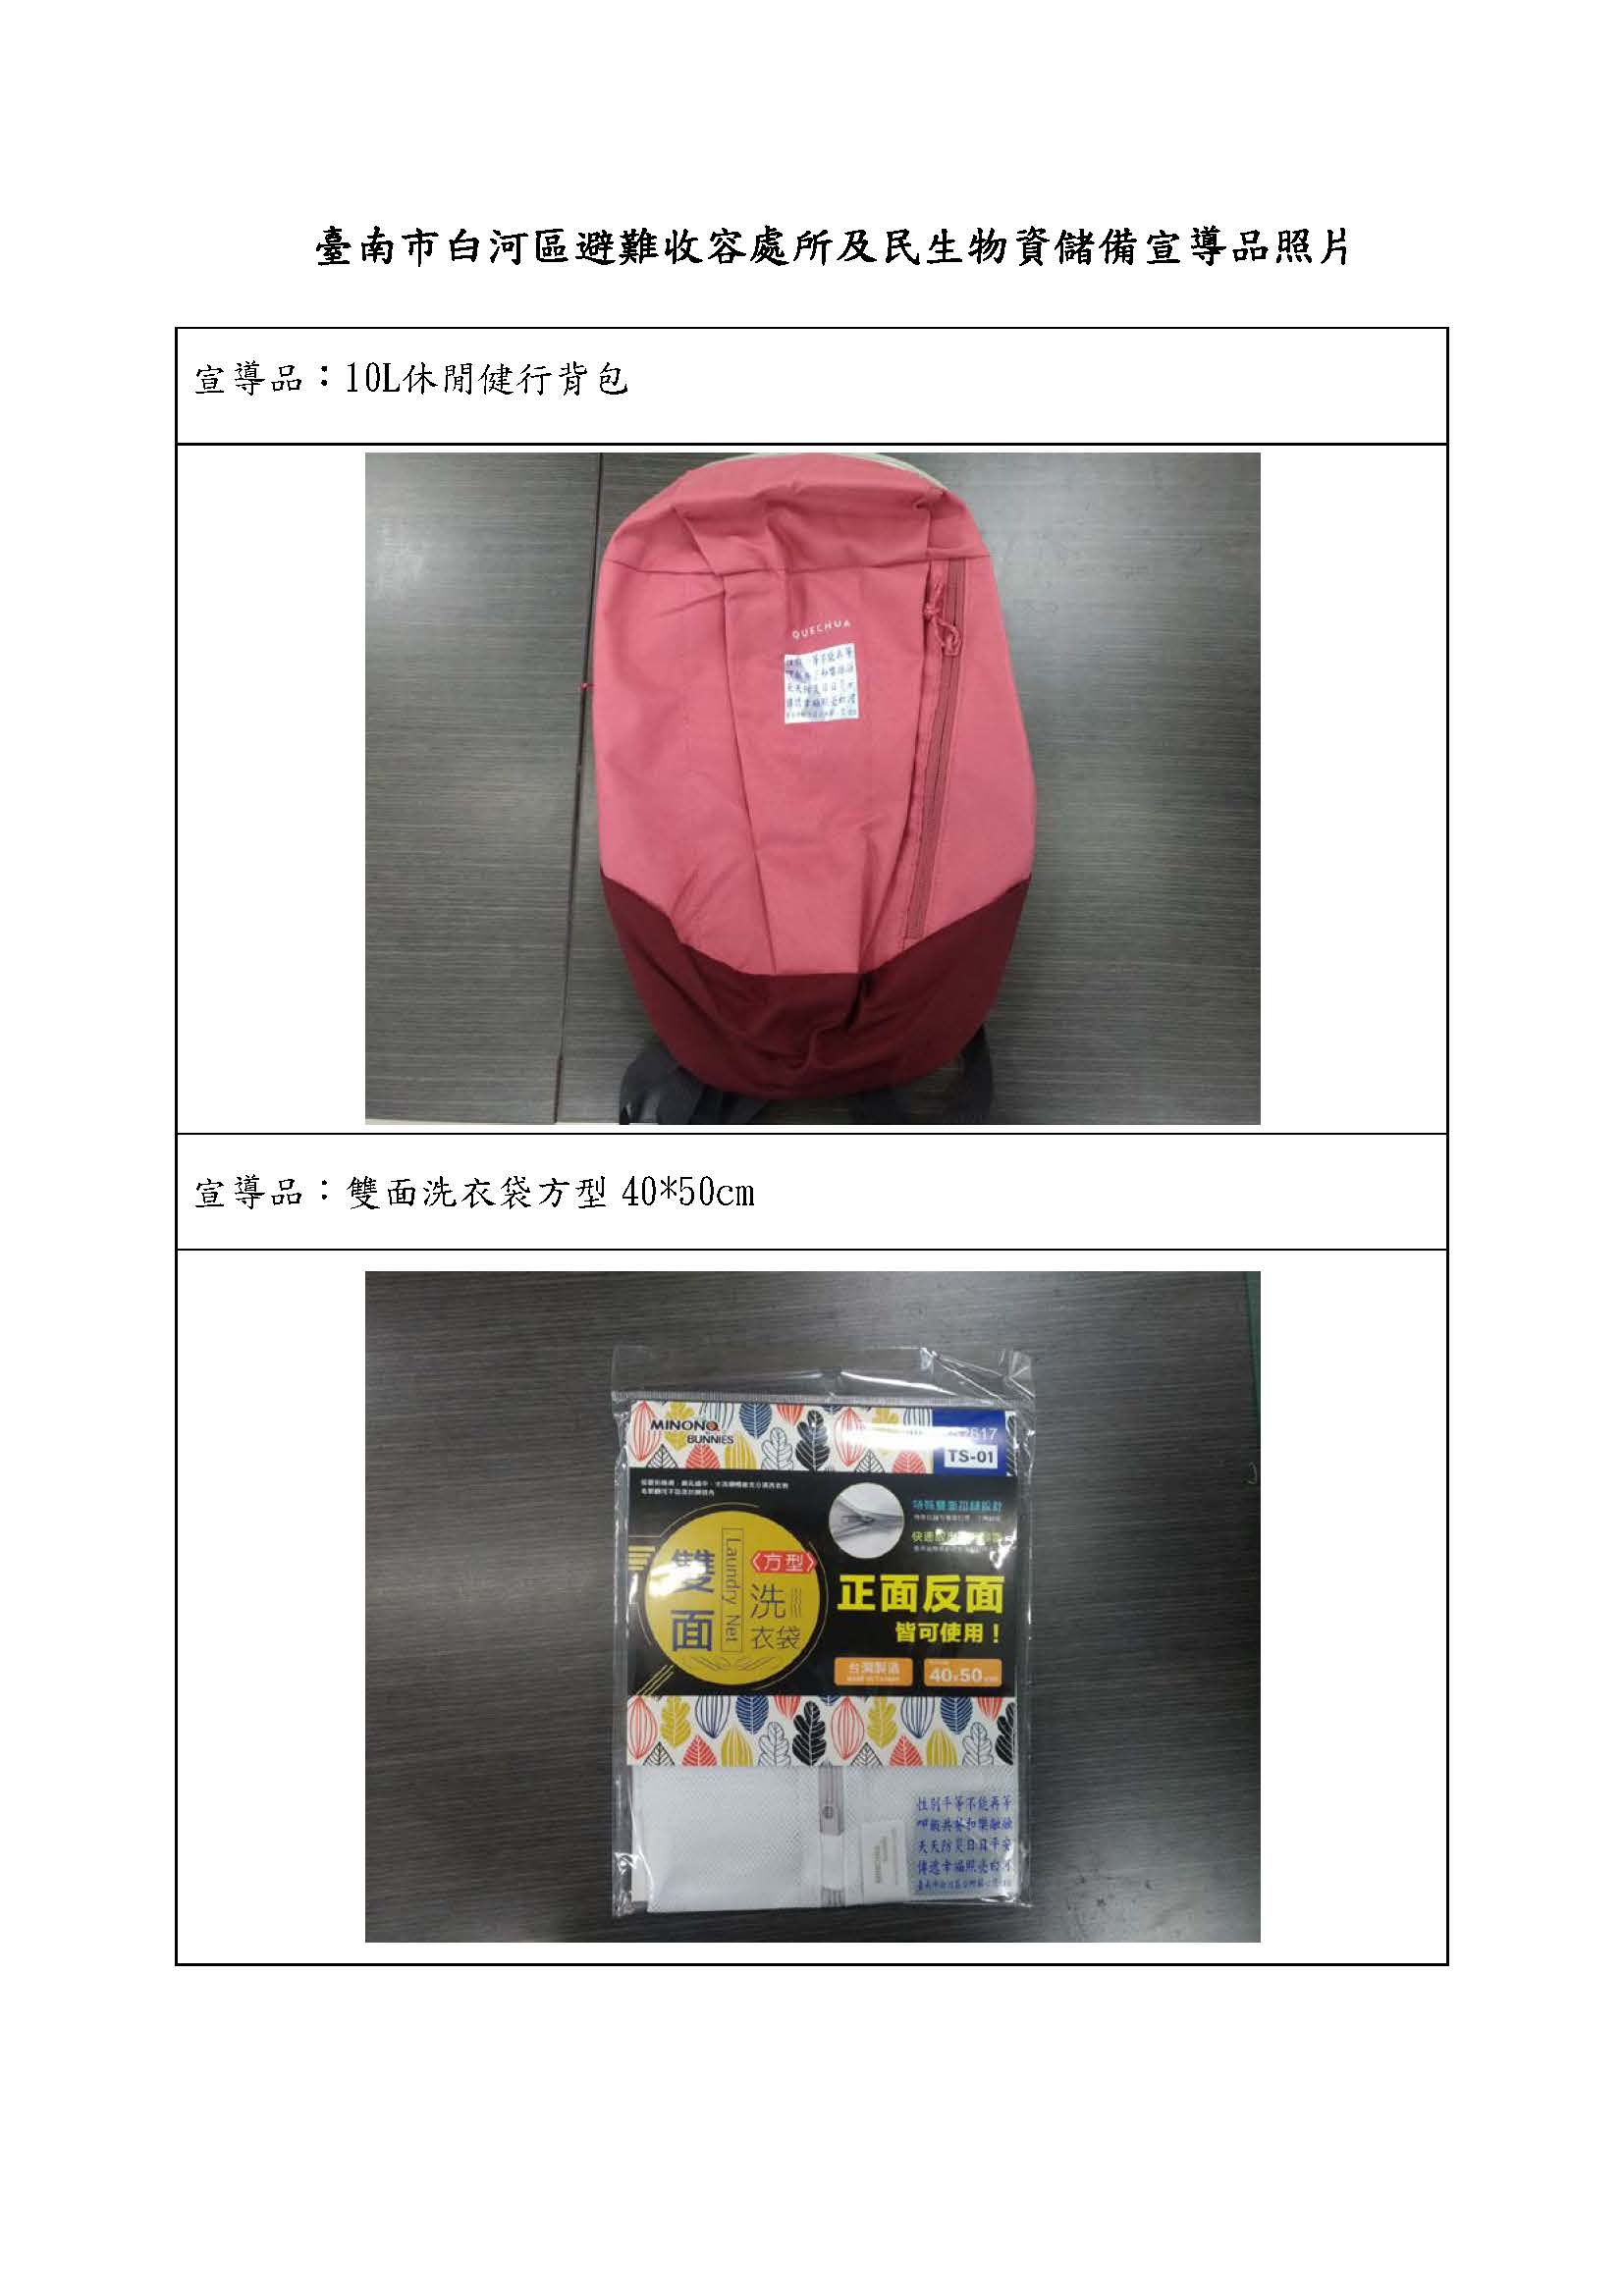 臺南市白河宣導品照片-休閒背包及雙面洗衣袋